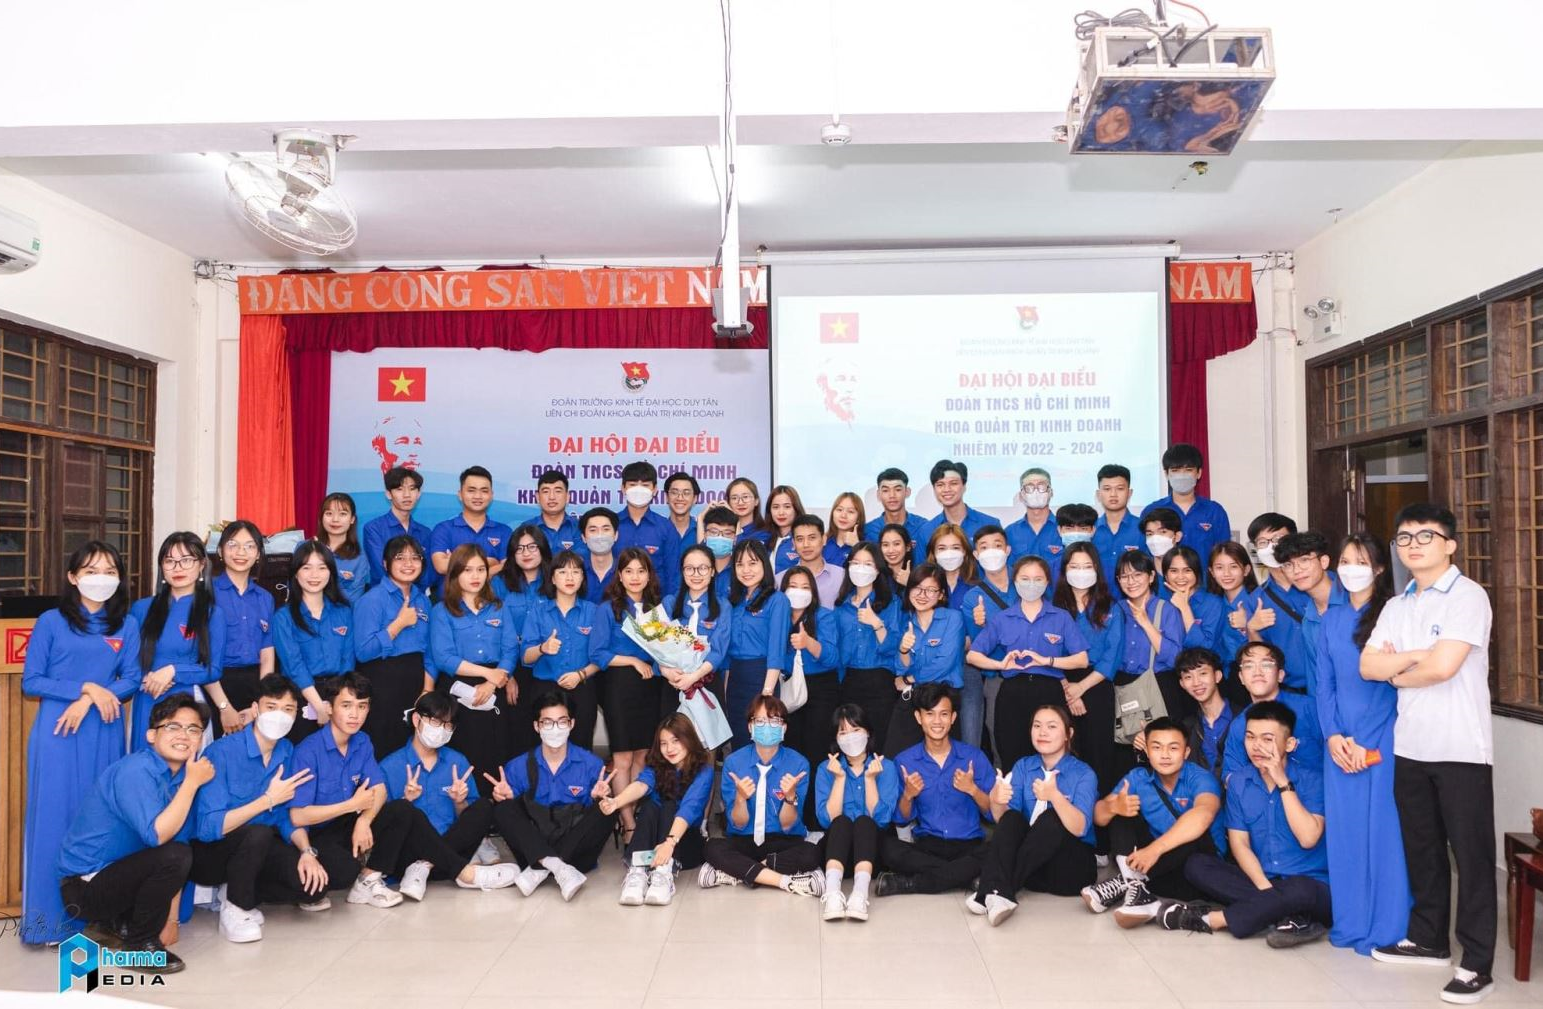 Đại hội đại biểu Đoàn TNCS Hồ Chí Minh Khoa Quản trị kinh doanh - Trường Đại học Duy Tân Nhiệm kỳ 2022-2024